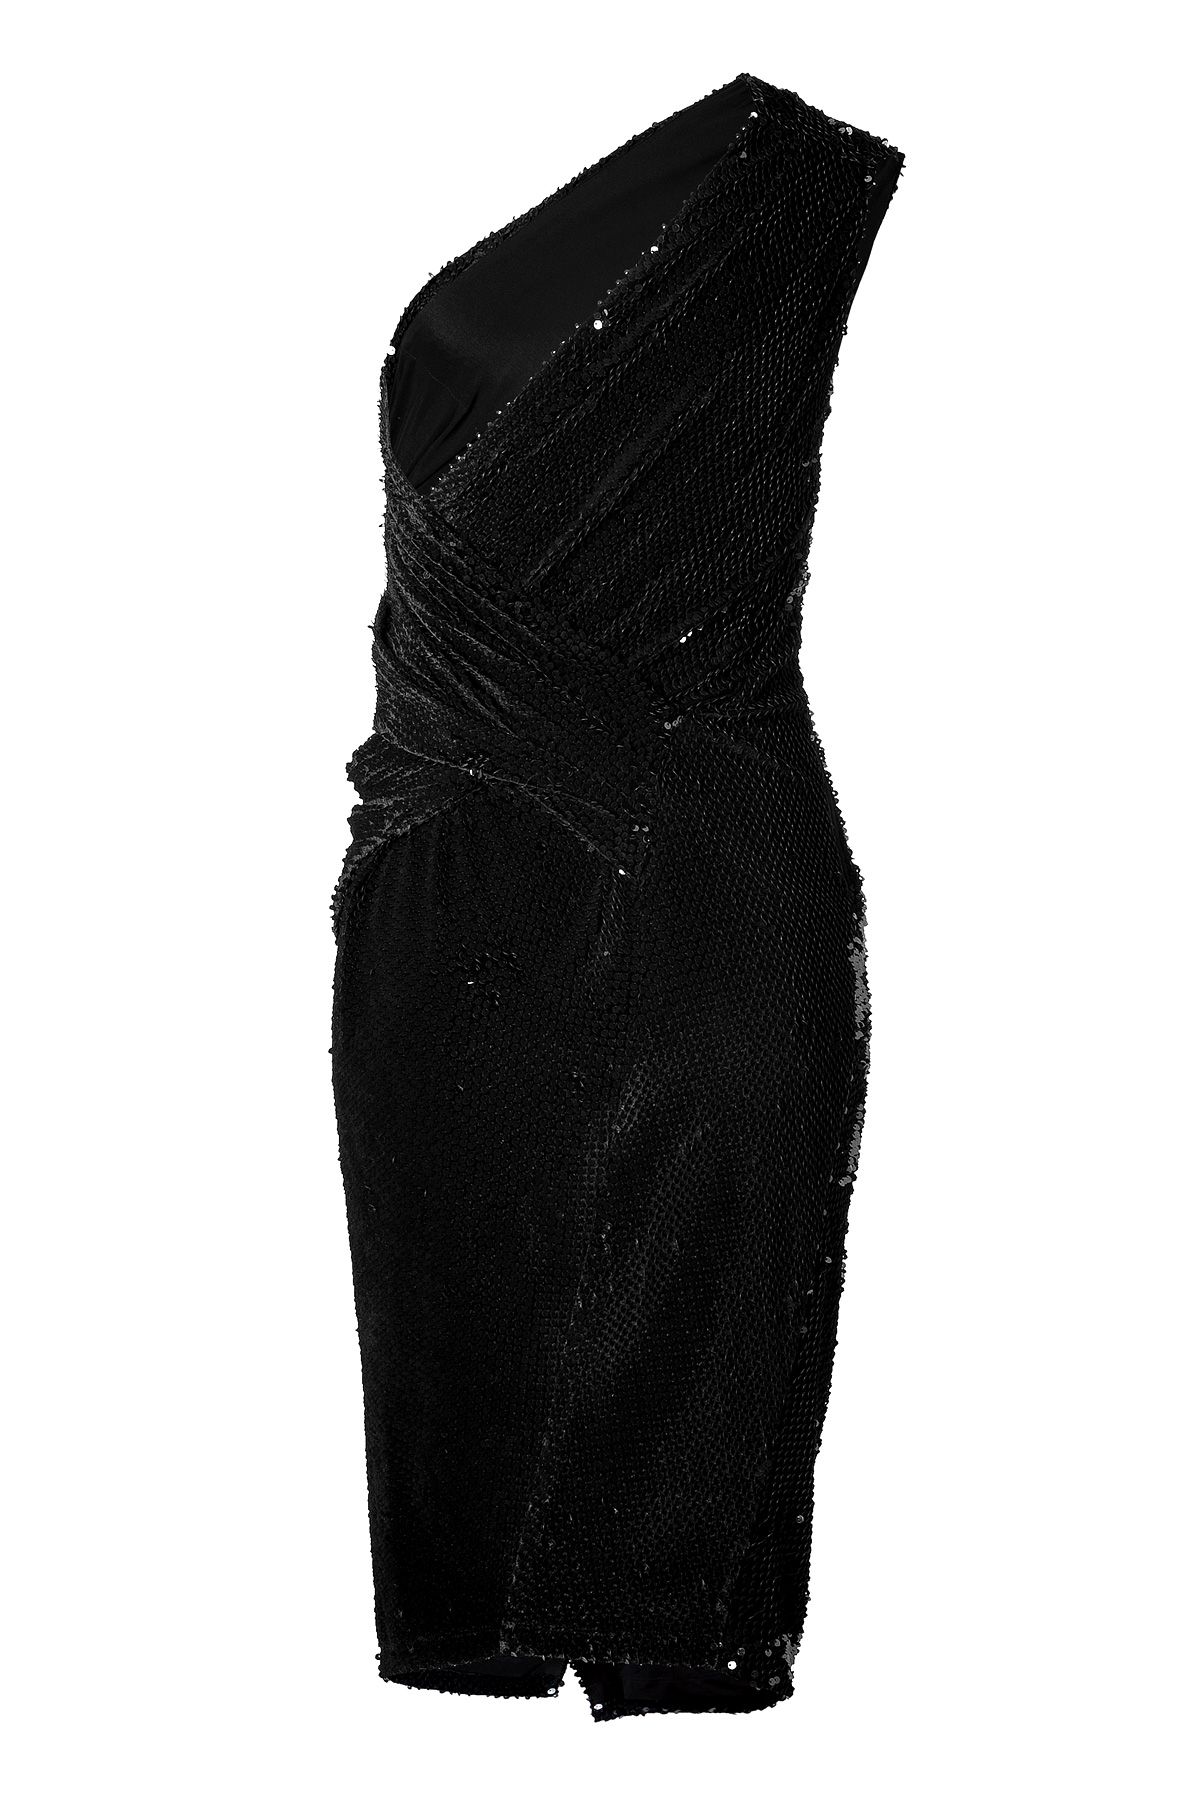 Donna Karan Sequined Velvet Dress In Black - Lyst